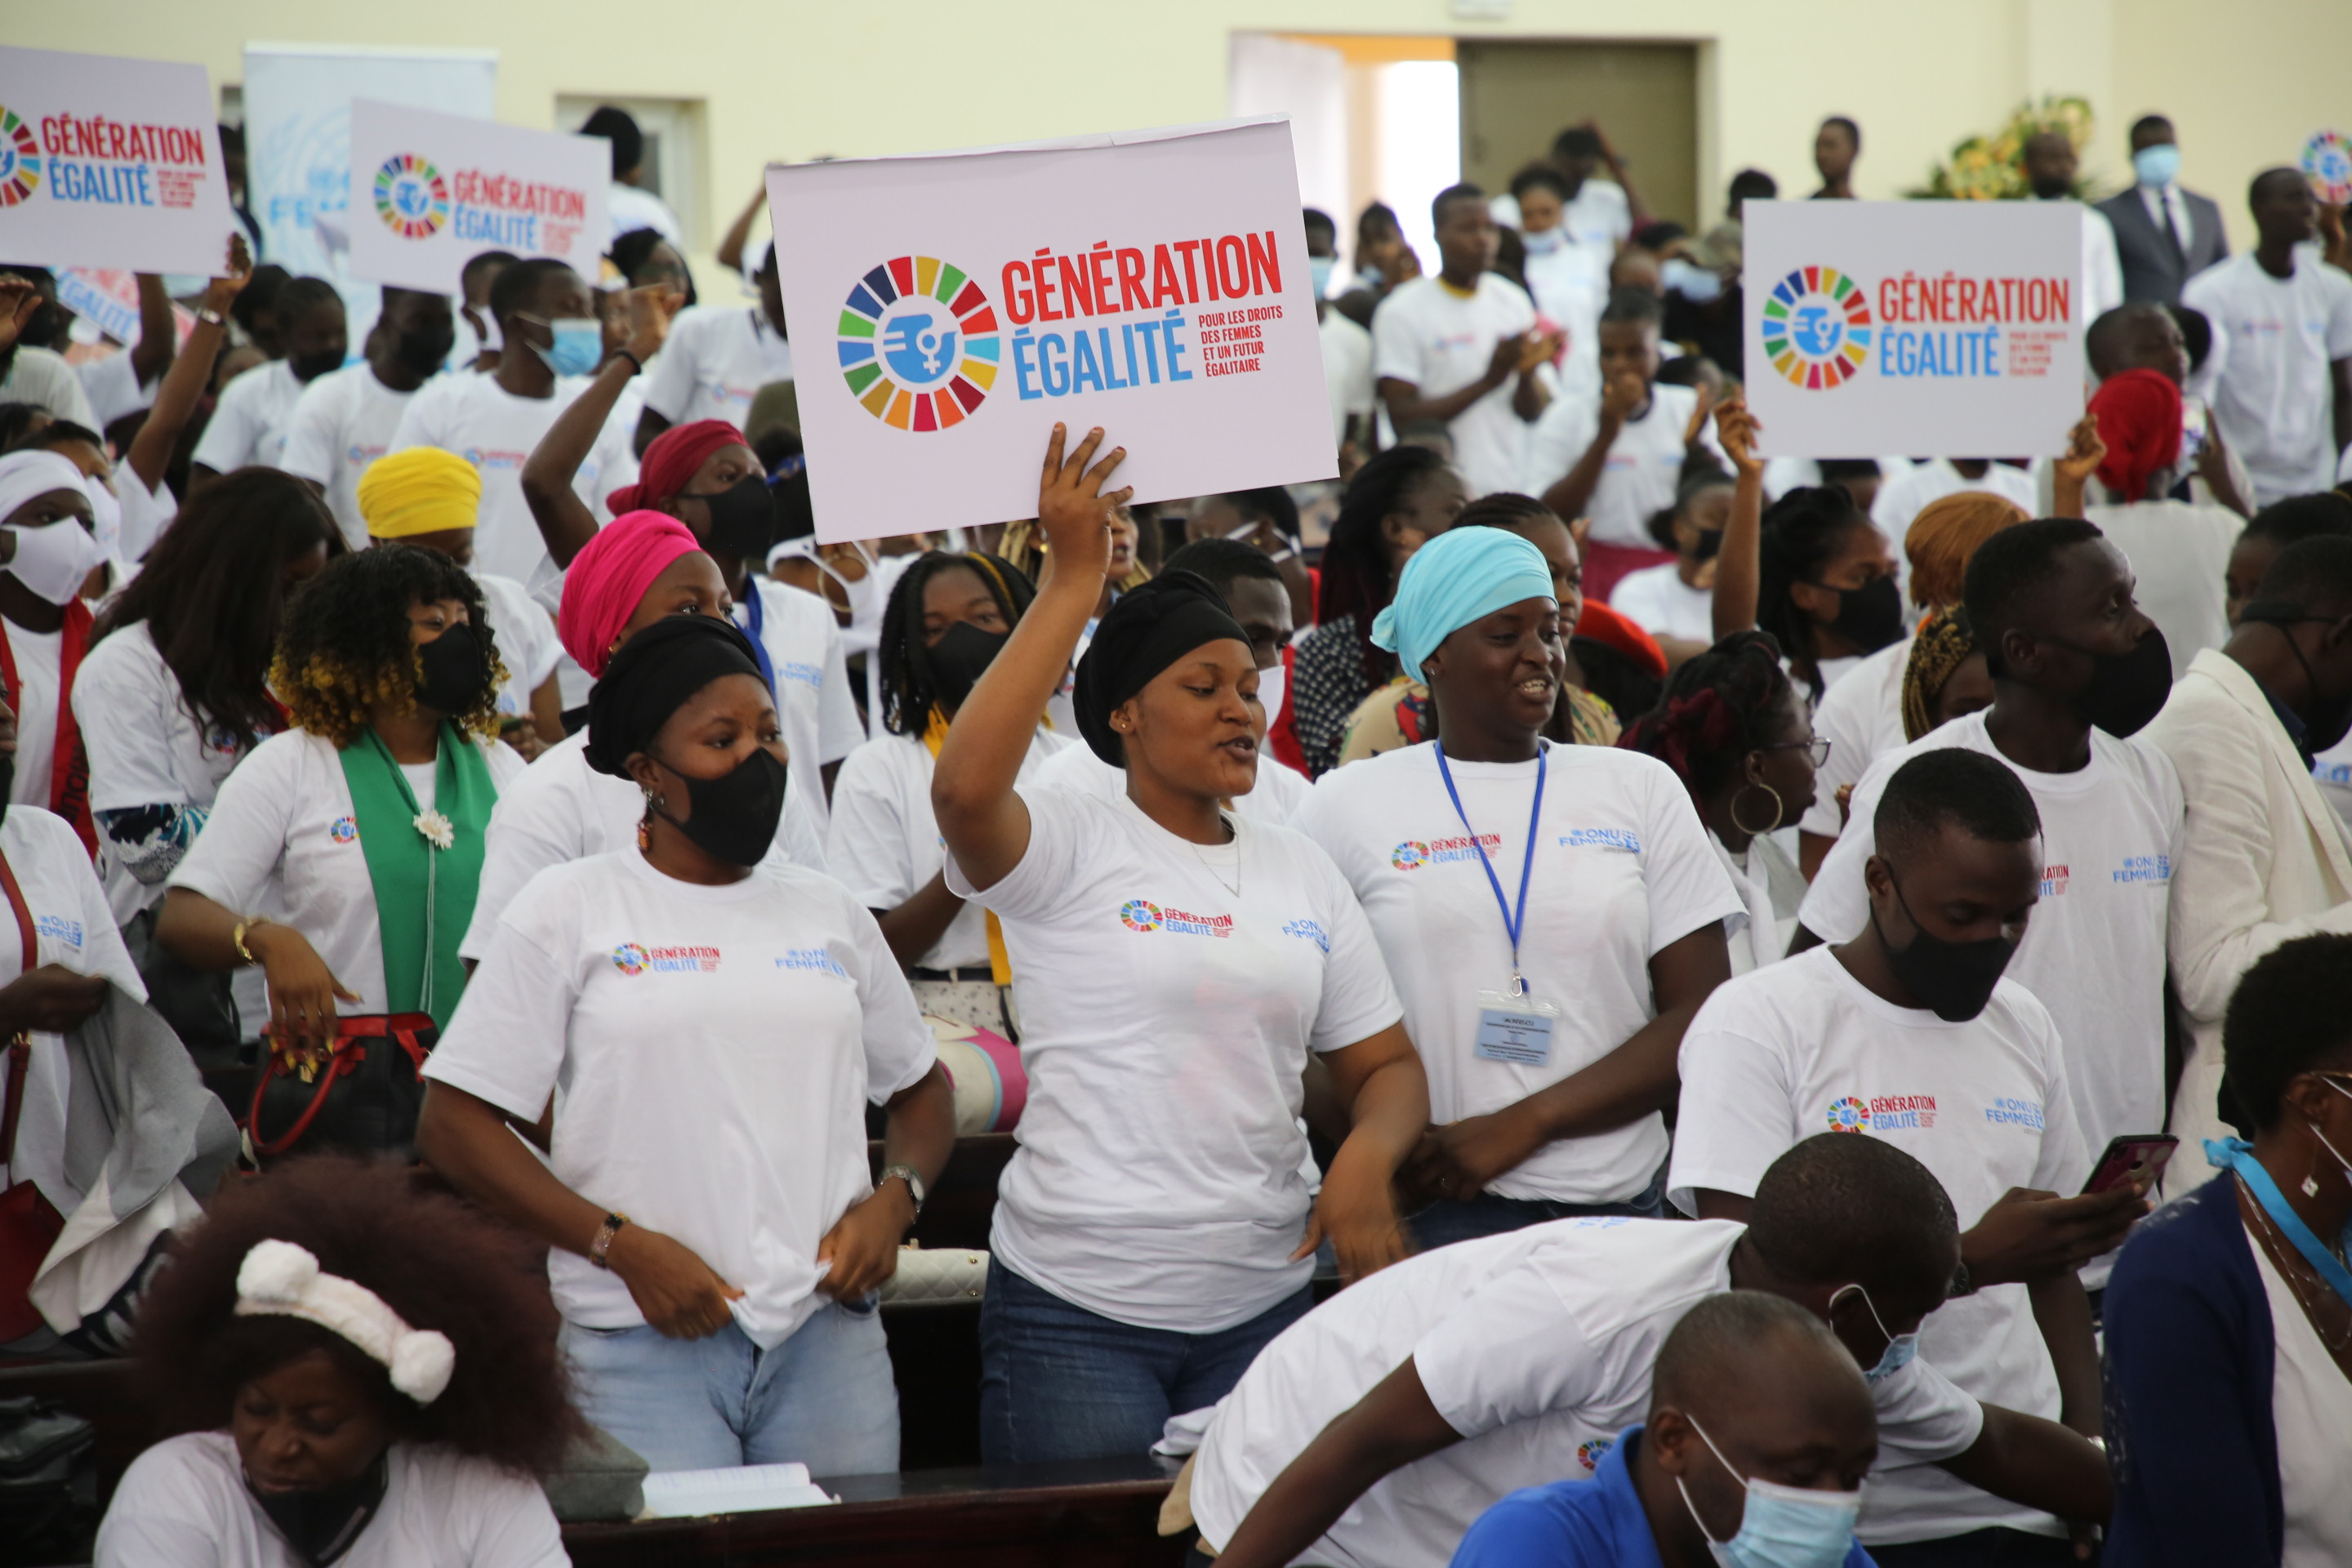 Lancement de la campagne “Génération Egalité” dans les universités ivoiriennes autour du triptyque Catalyser-Mobiliser-Livrer